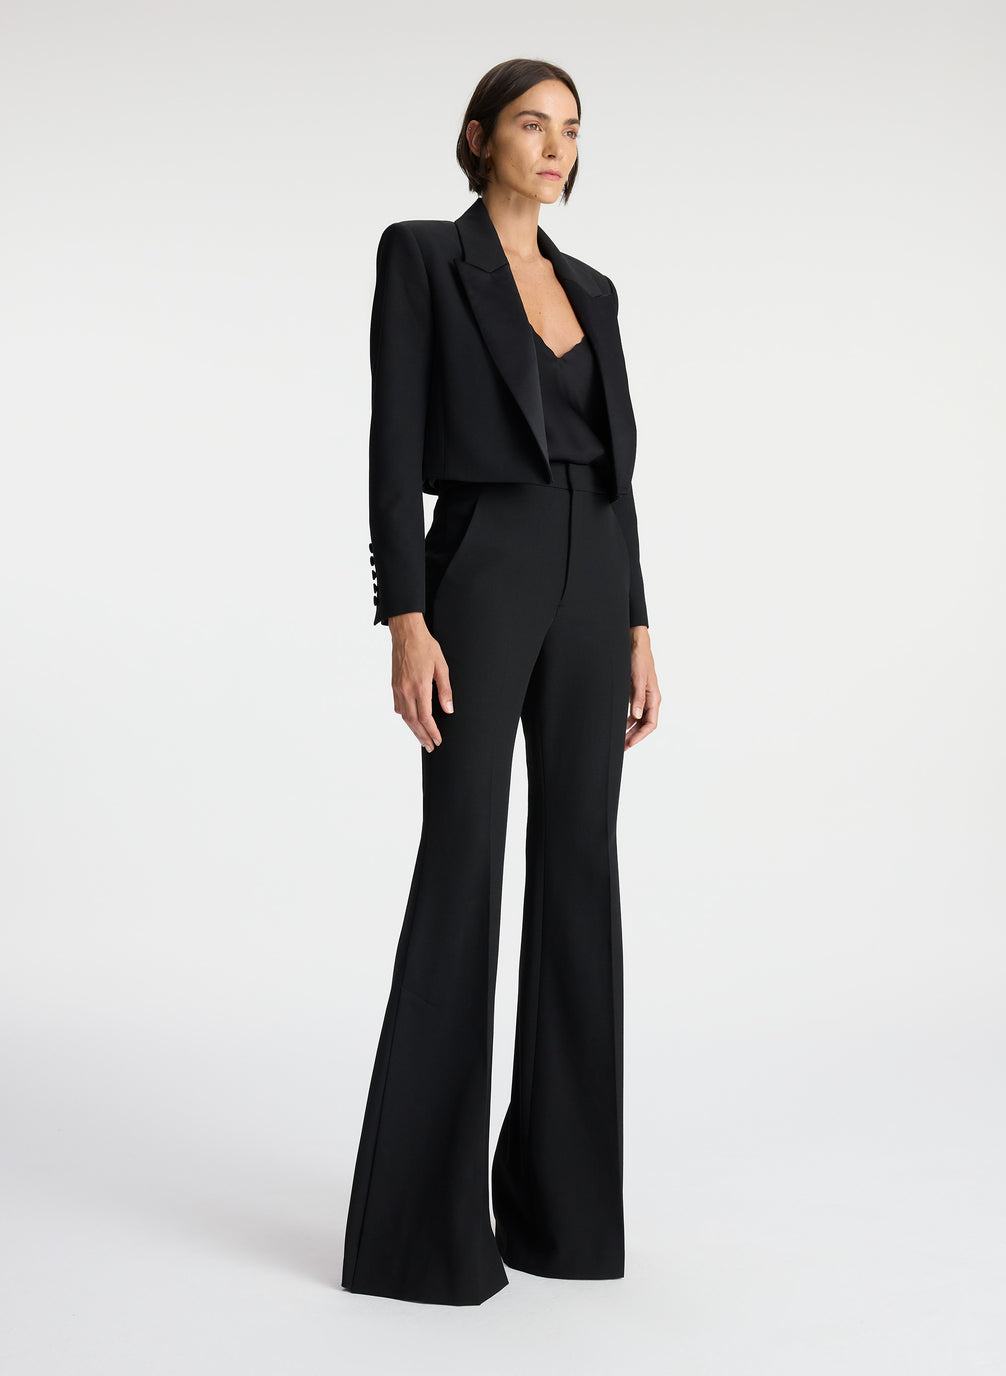 black suit for women